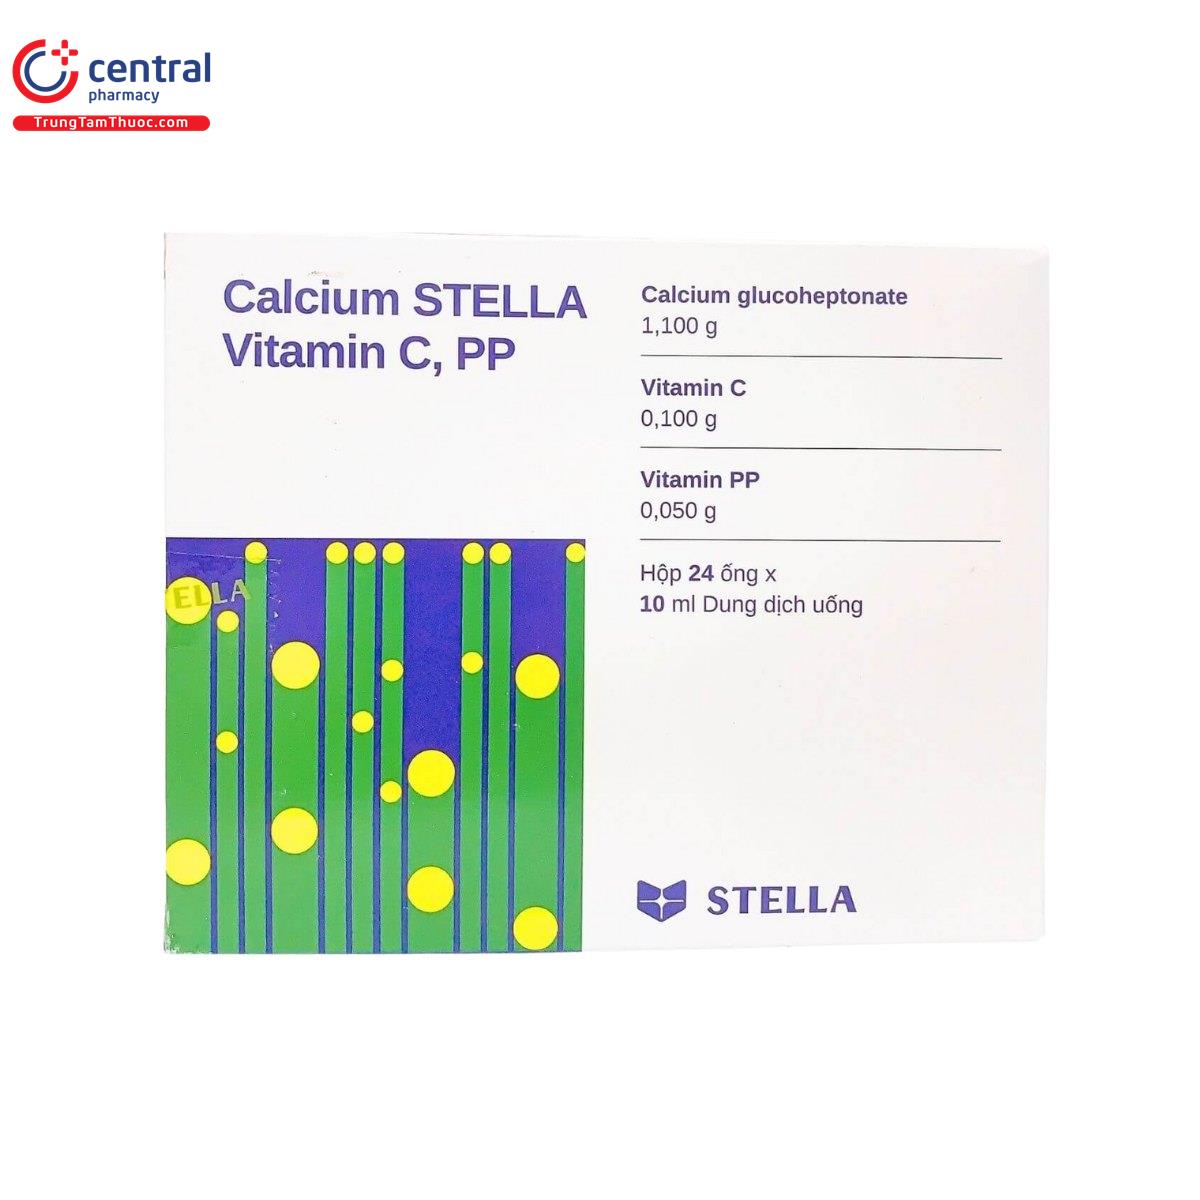 calcium stella vitamin c pp 4 M5327